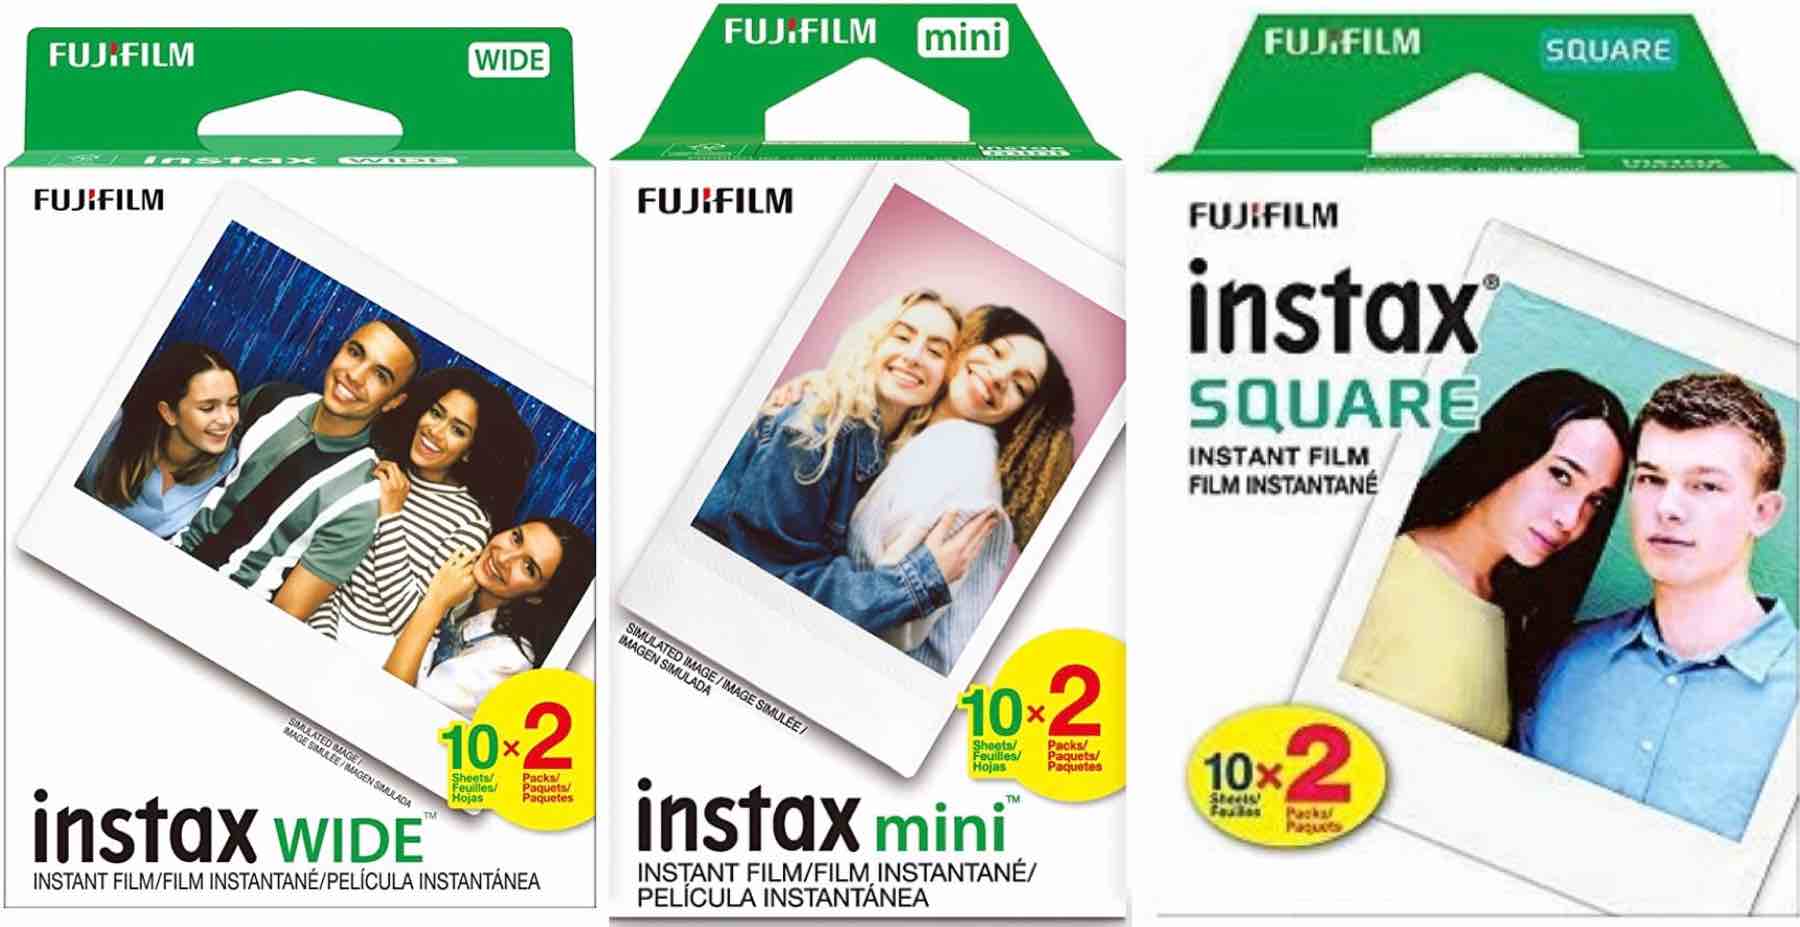 Papier photo instantané Fujifilm 10 Films Instantané Mini Heart